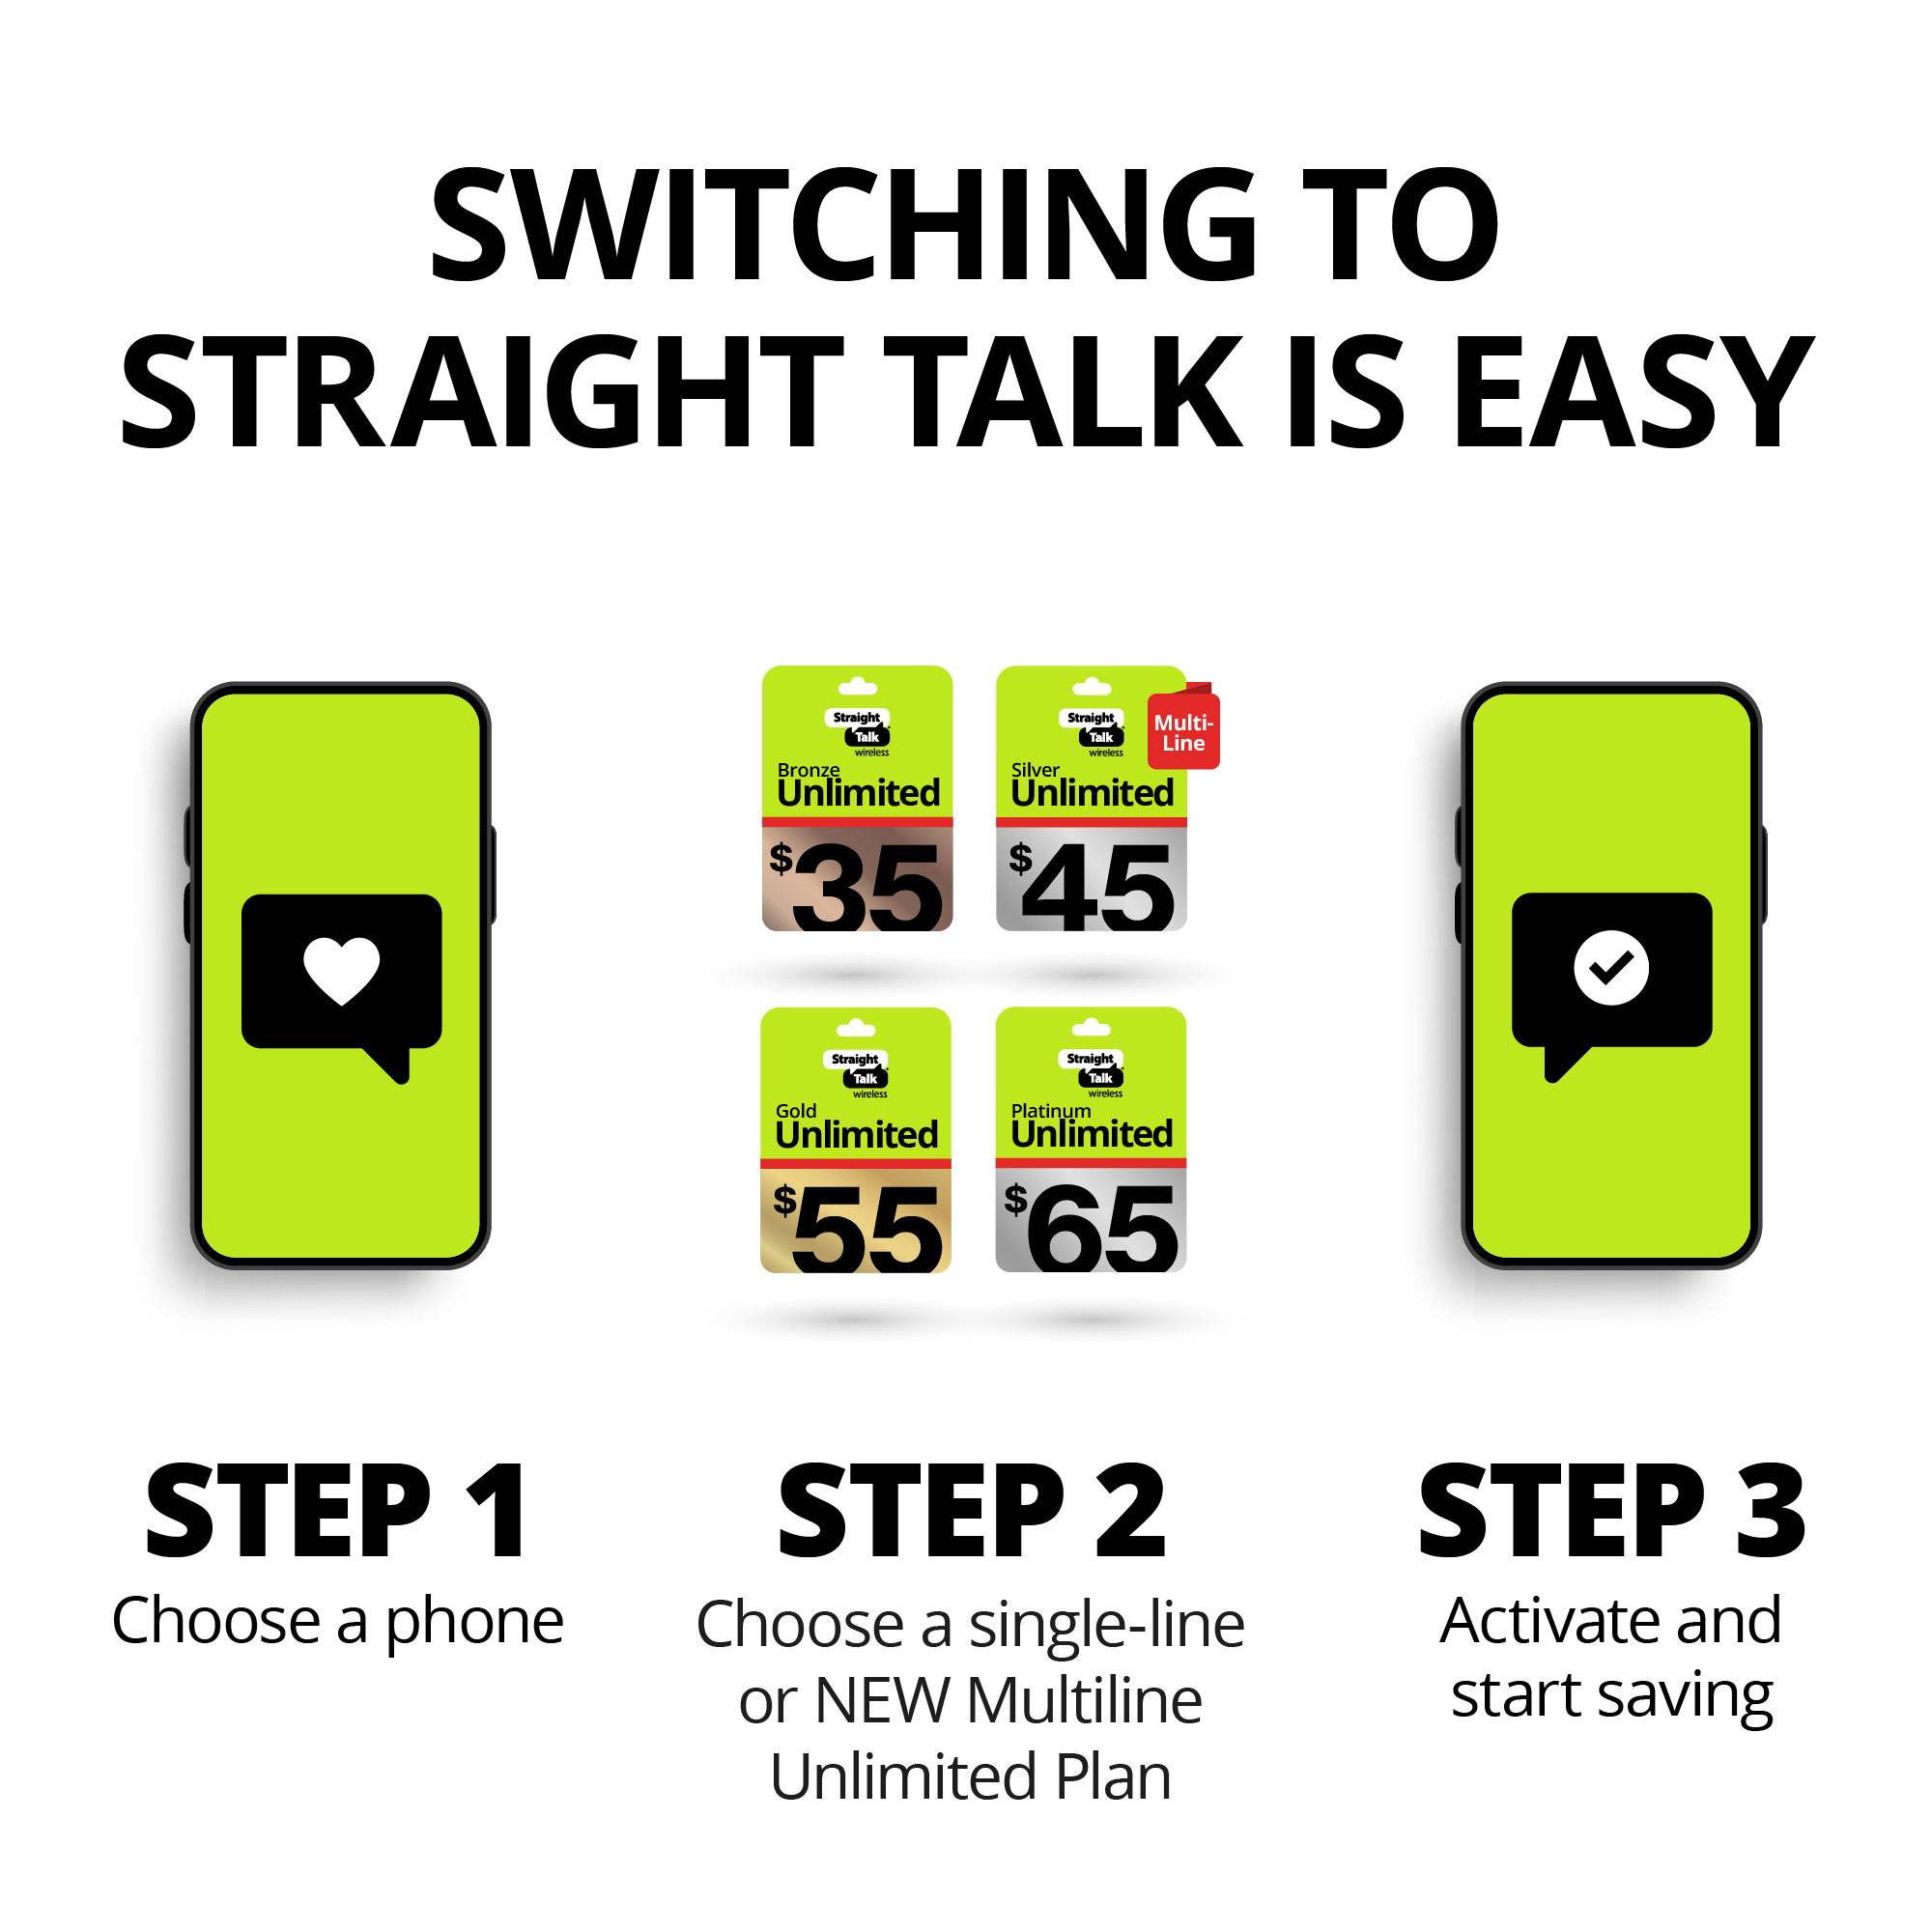 Straight Talk Google Pixel 6A, 128GB, 6GB RAM, Black - Prepaid Smartphone [Locked to Straight Talk] - image 5 of 11